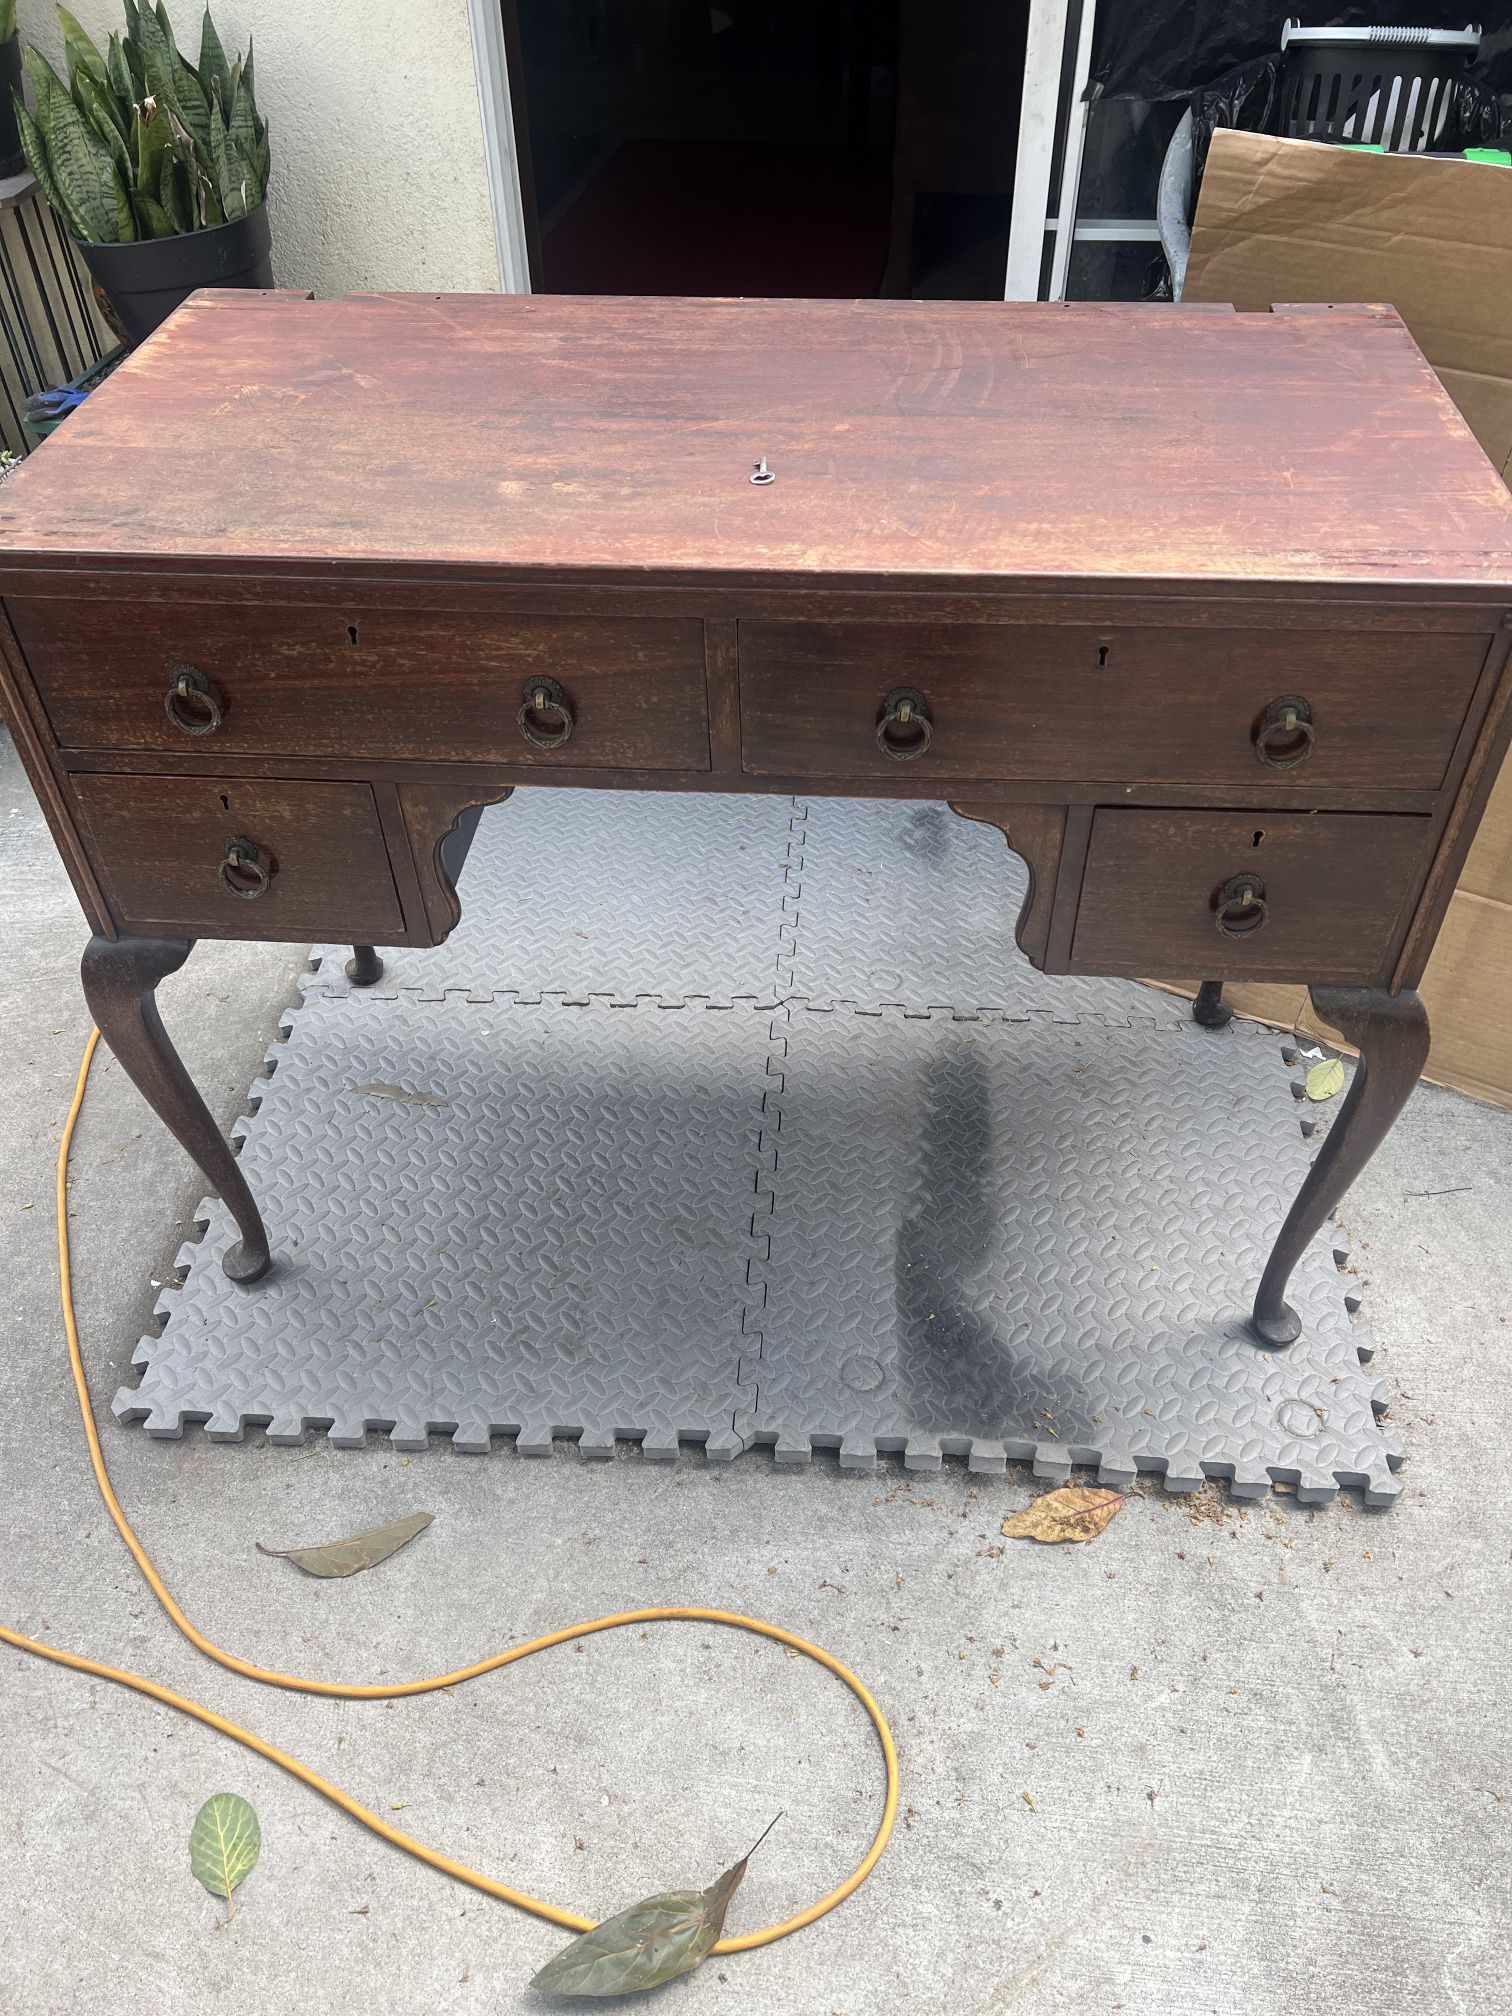 Antique Table Drawer Desk w/skeleton key for functional drawer locks...